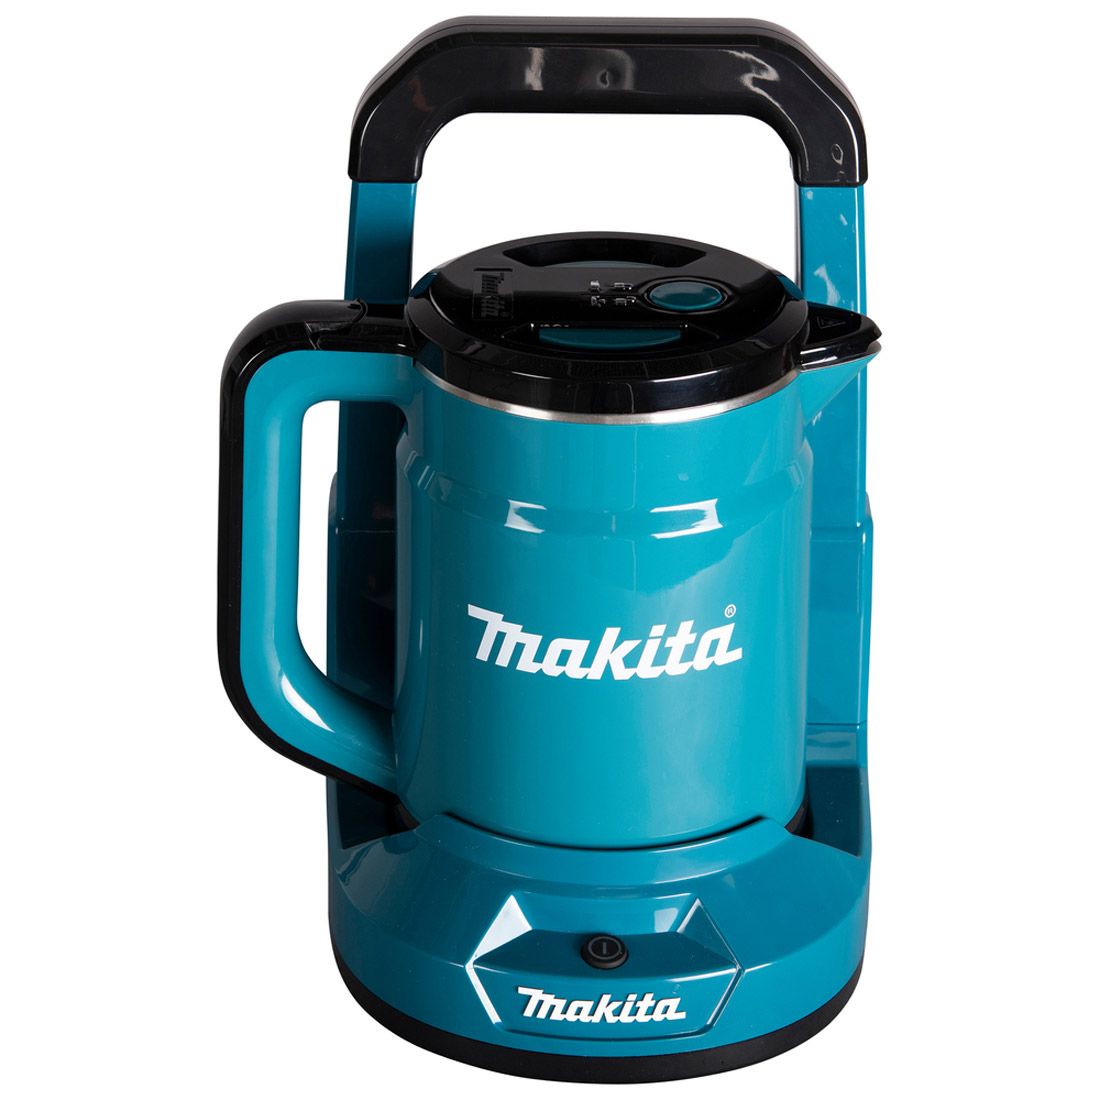 Makita DKT360Z Cordless Kettle 18V x 2 (36V) Max LXT (Bare Tool Only)